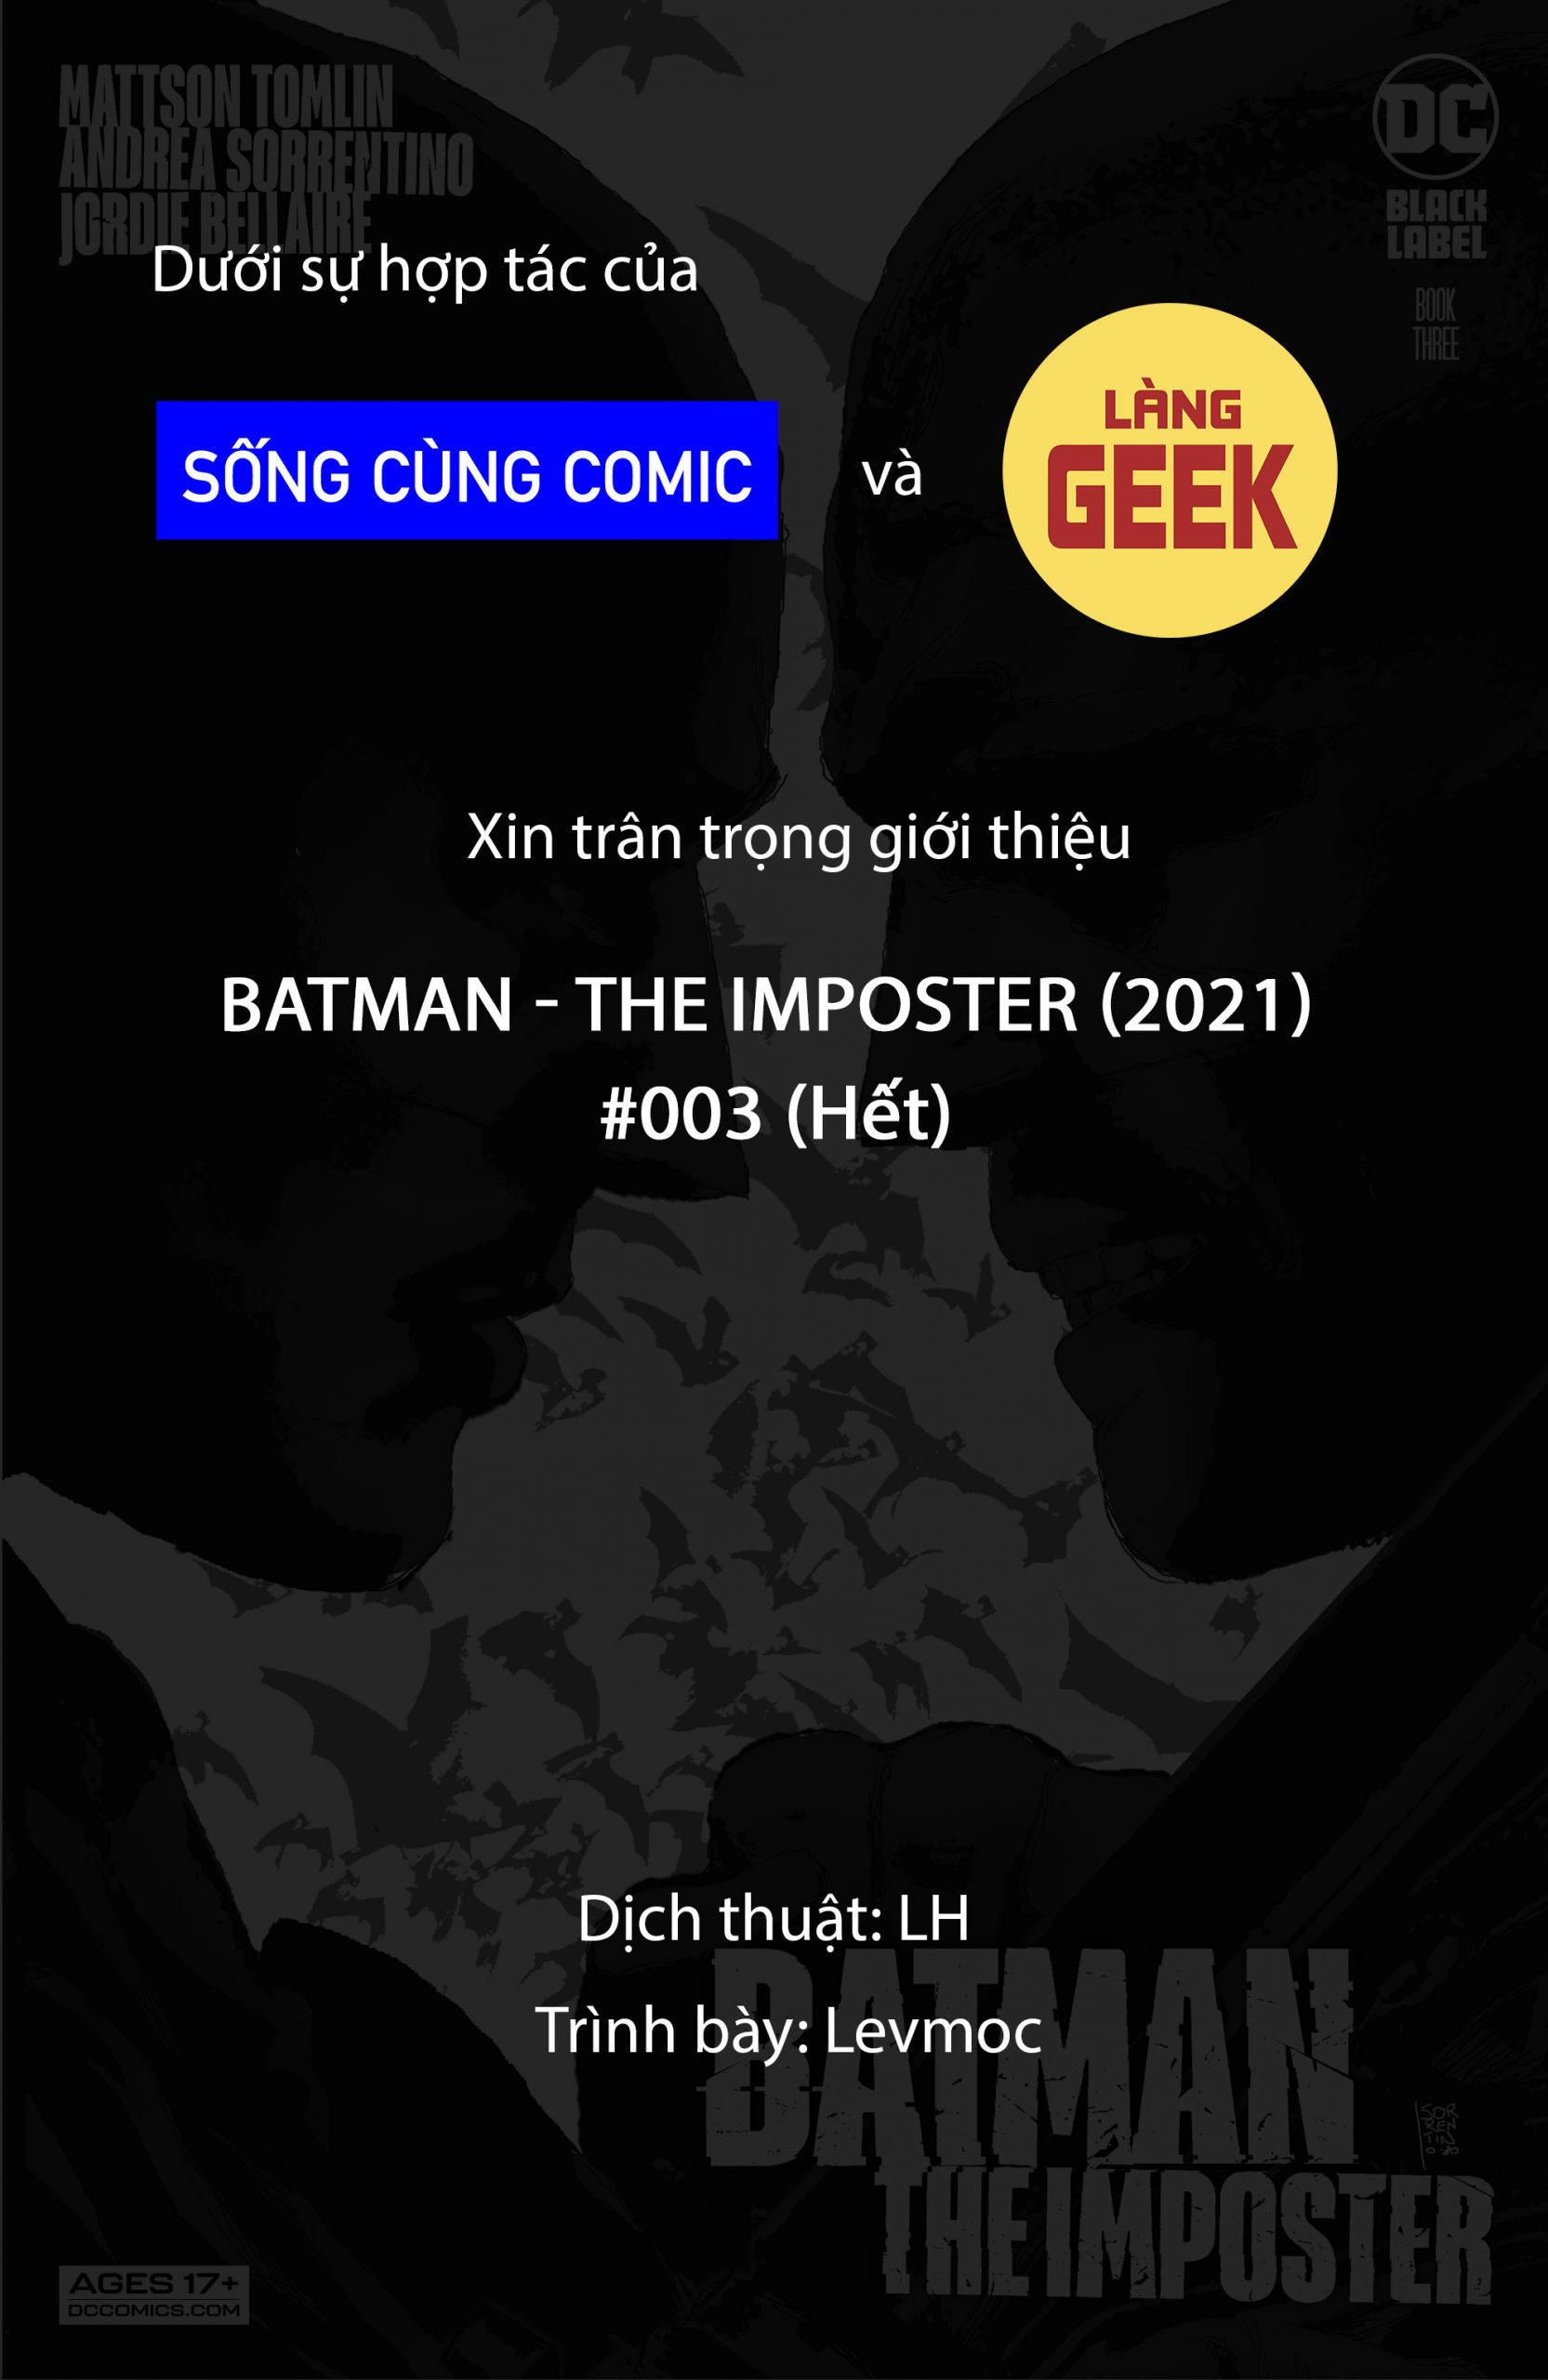 https://langgeek.net/wp-content/webpc-passthru.php?src=https://langgeek.net/wp-content/uploads/2021/12/Batman-The-Imposter-2021-003-001-scaled.jpg&nocache=1